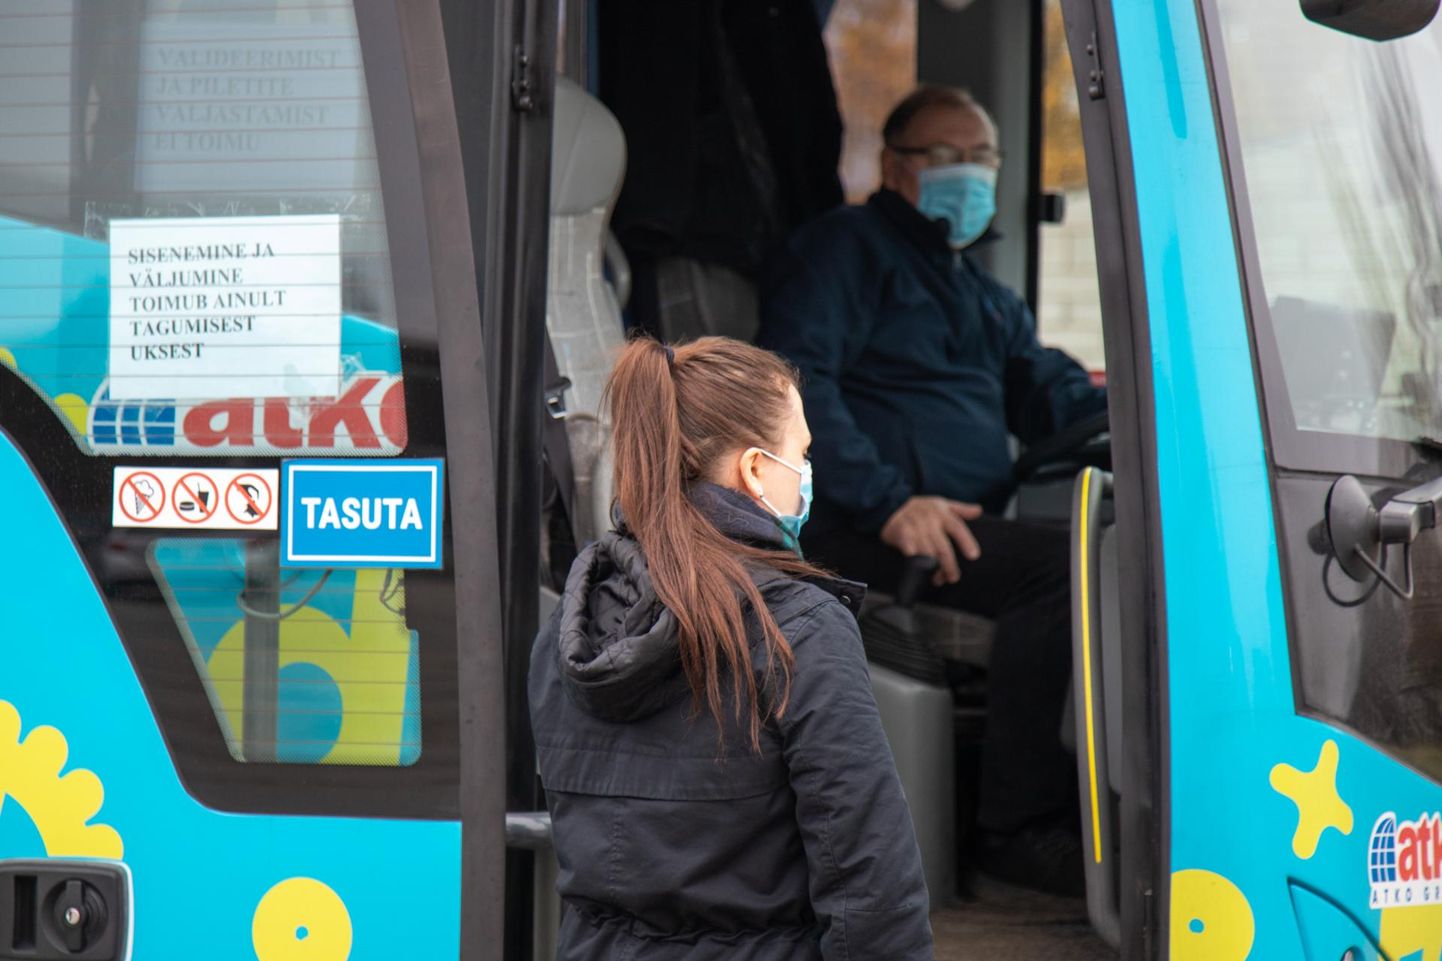 Bussi minnes soovitatakse kanda maski.